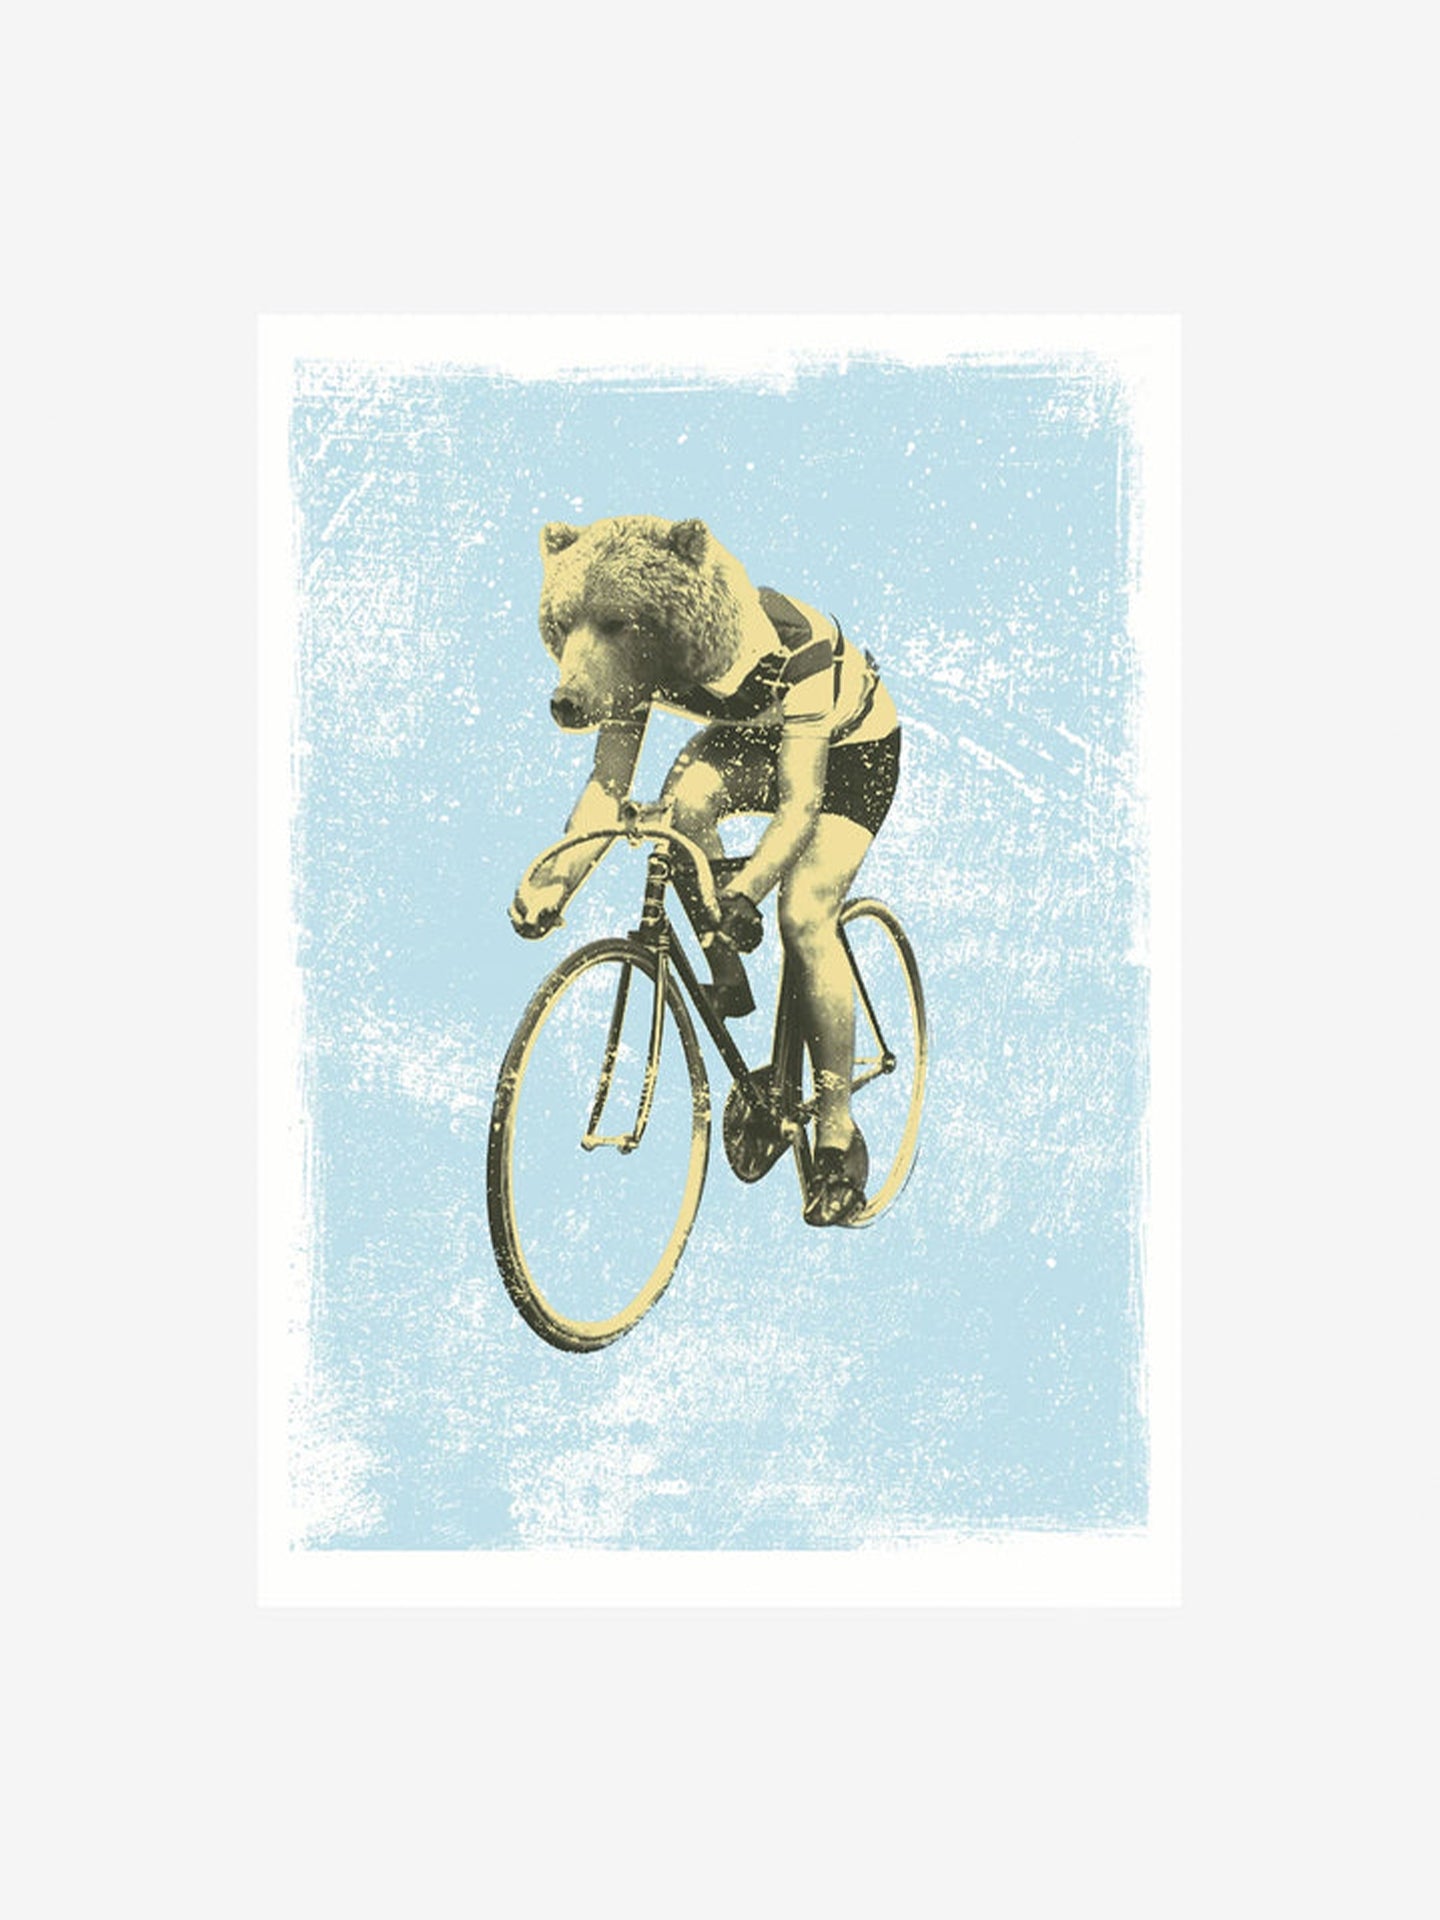 L’ours de la course - Poster - La Machine Cycle Club.